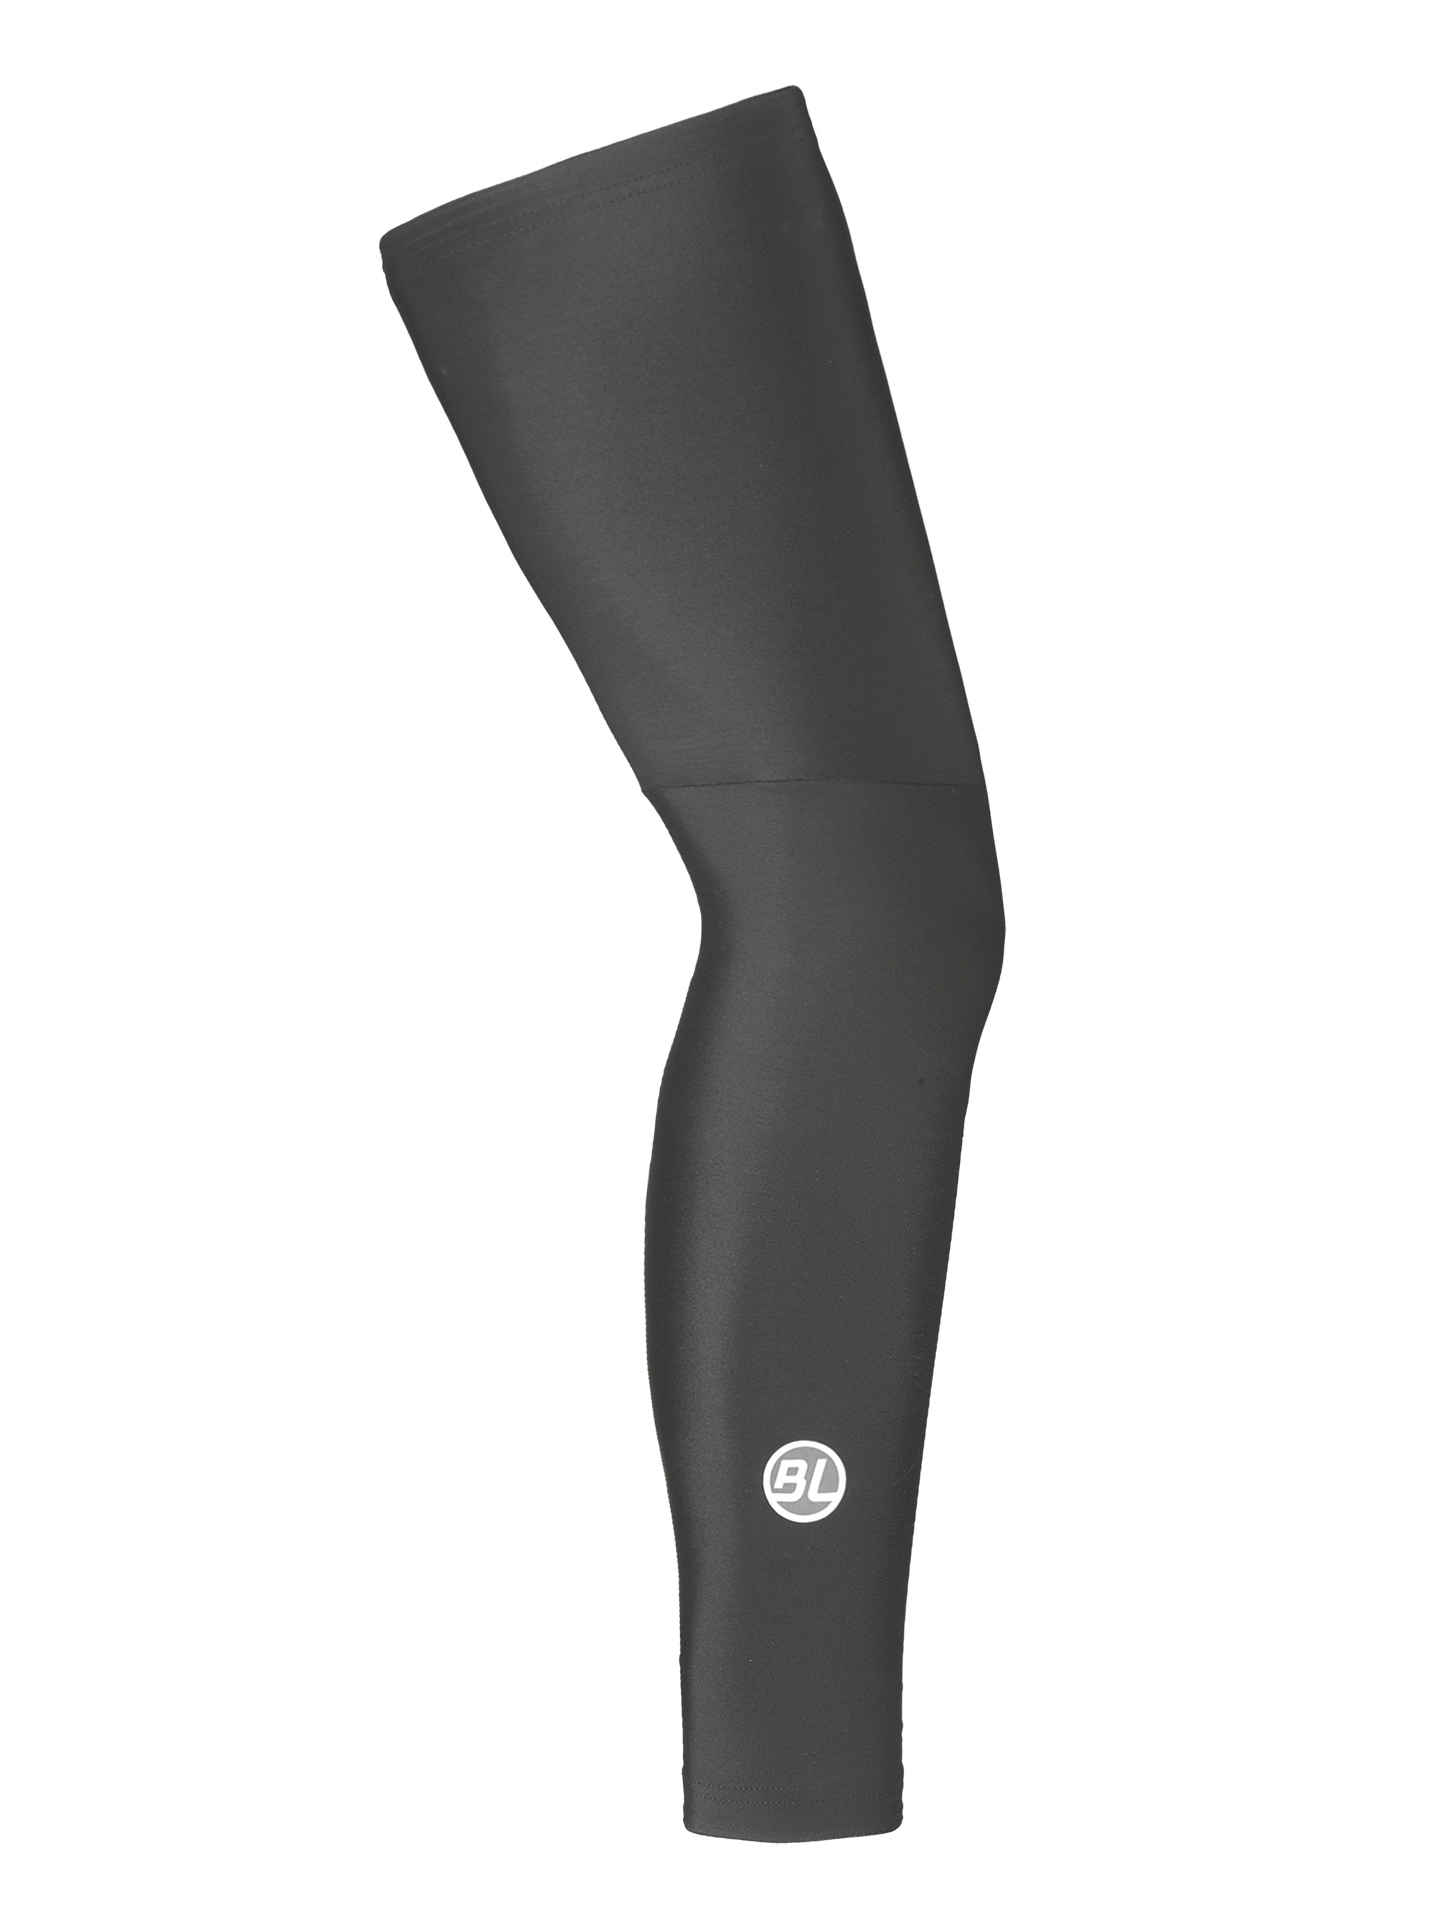 Утеплитель ног Bicycle Line FIANDRE, black (черный), S фото 